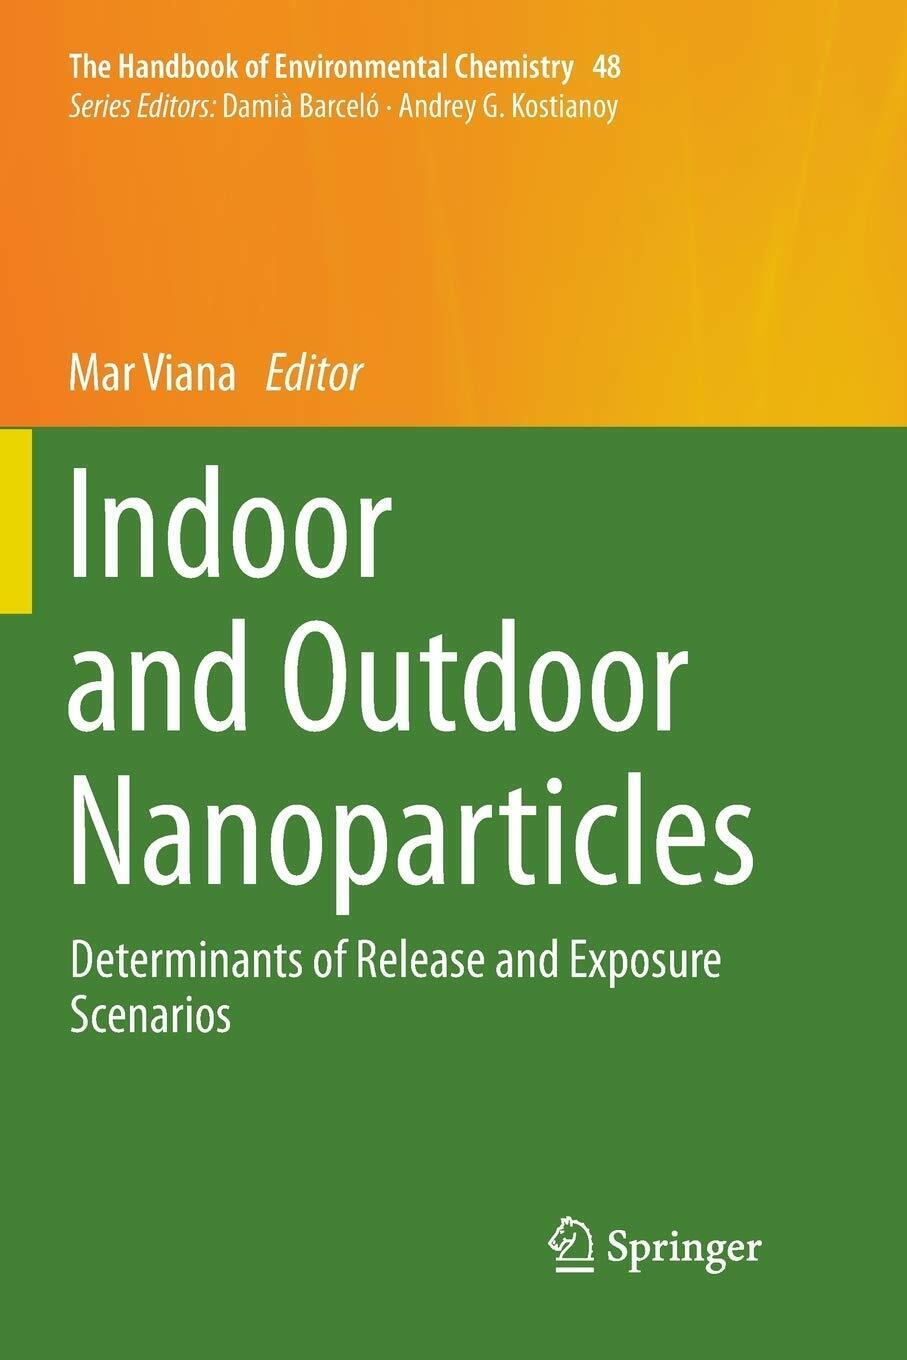 Indoor and Outdoor Nanoparticles - Mar Viana - Springer, 2018